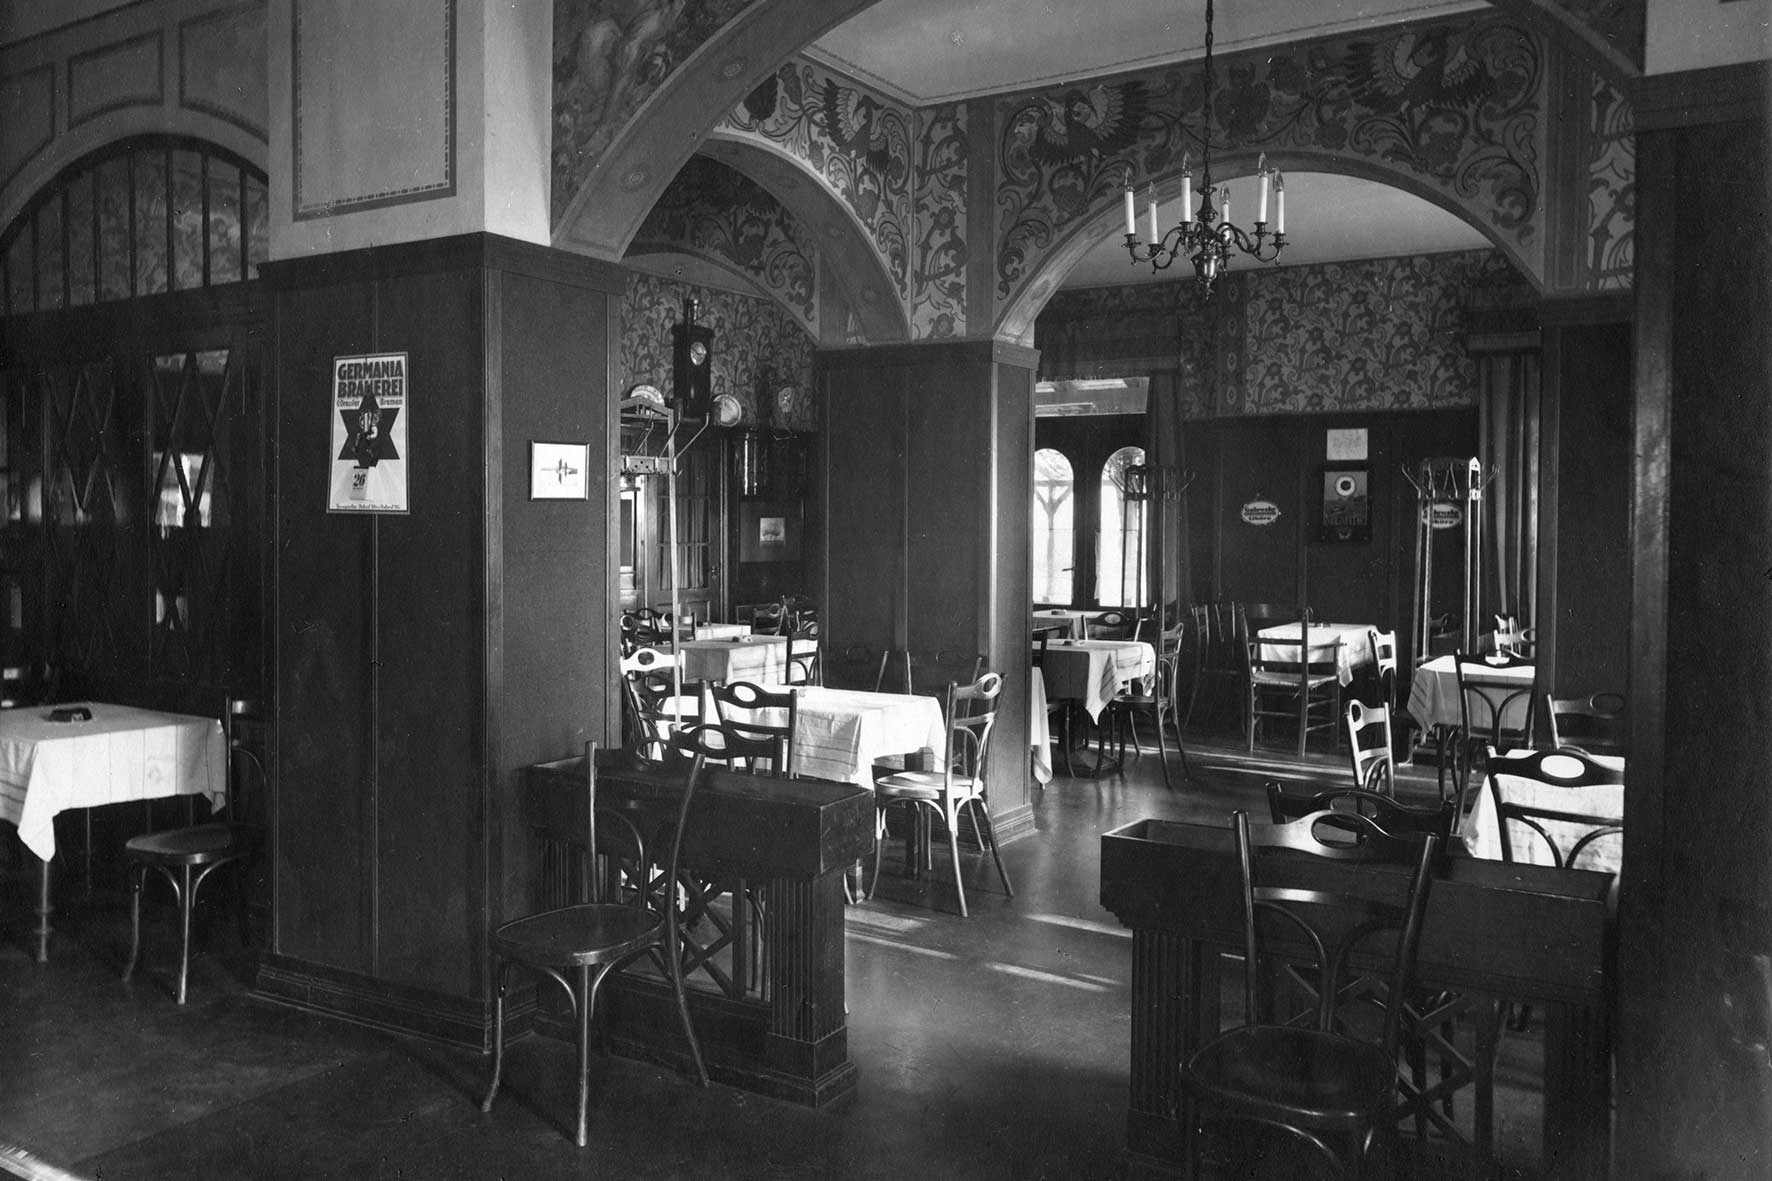 Schwarz-weiß-Foto eines ehemaligen Gastraums in der Munte aus dem Jahre 1926